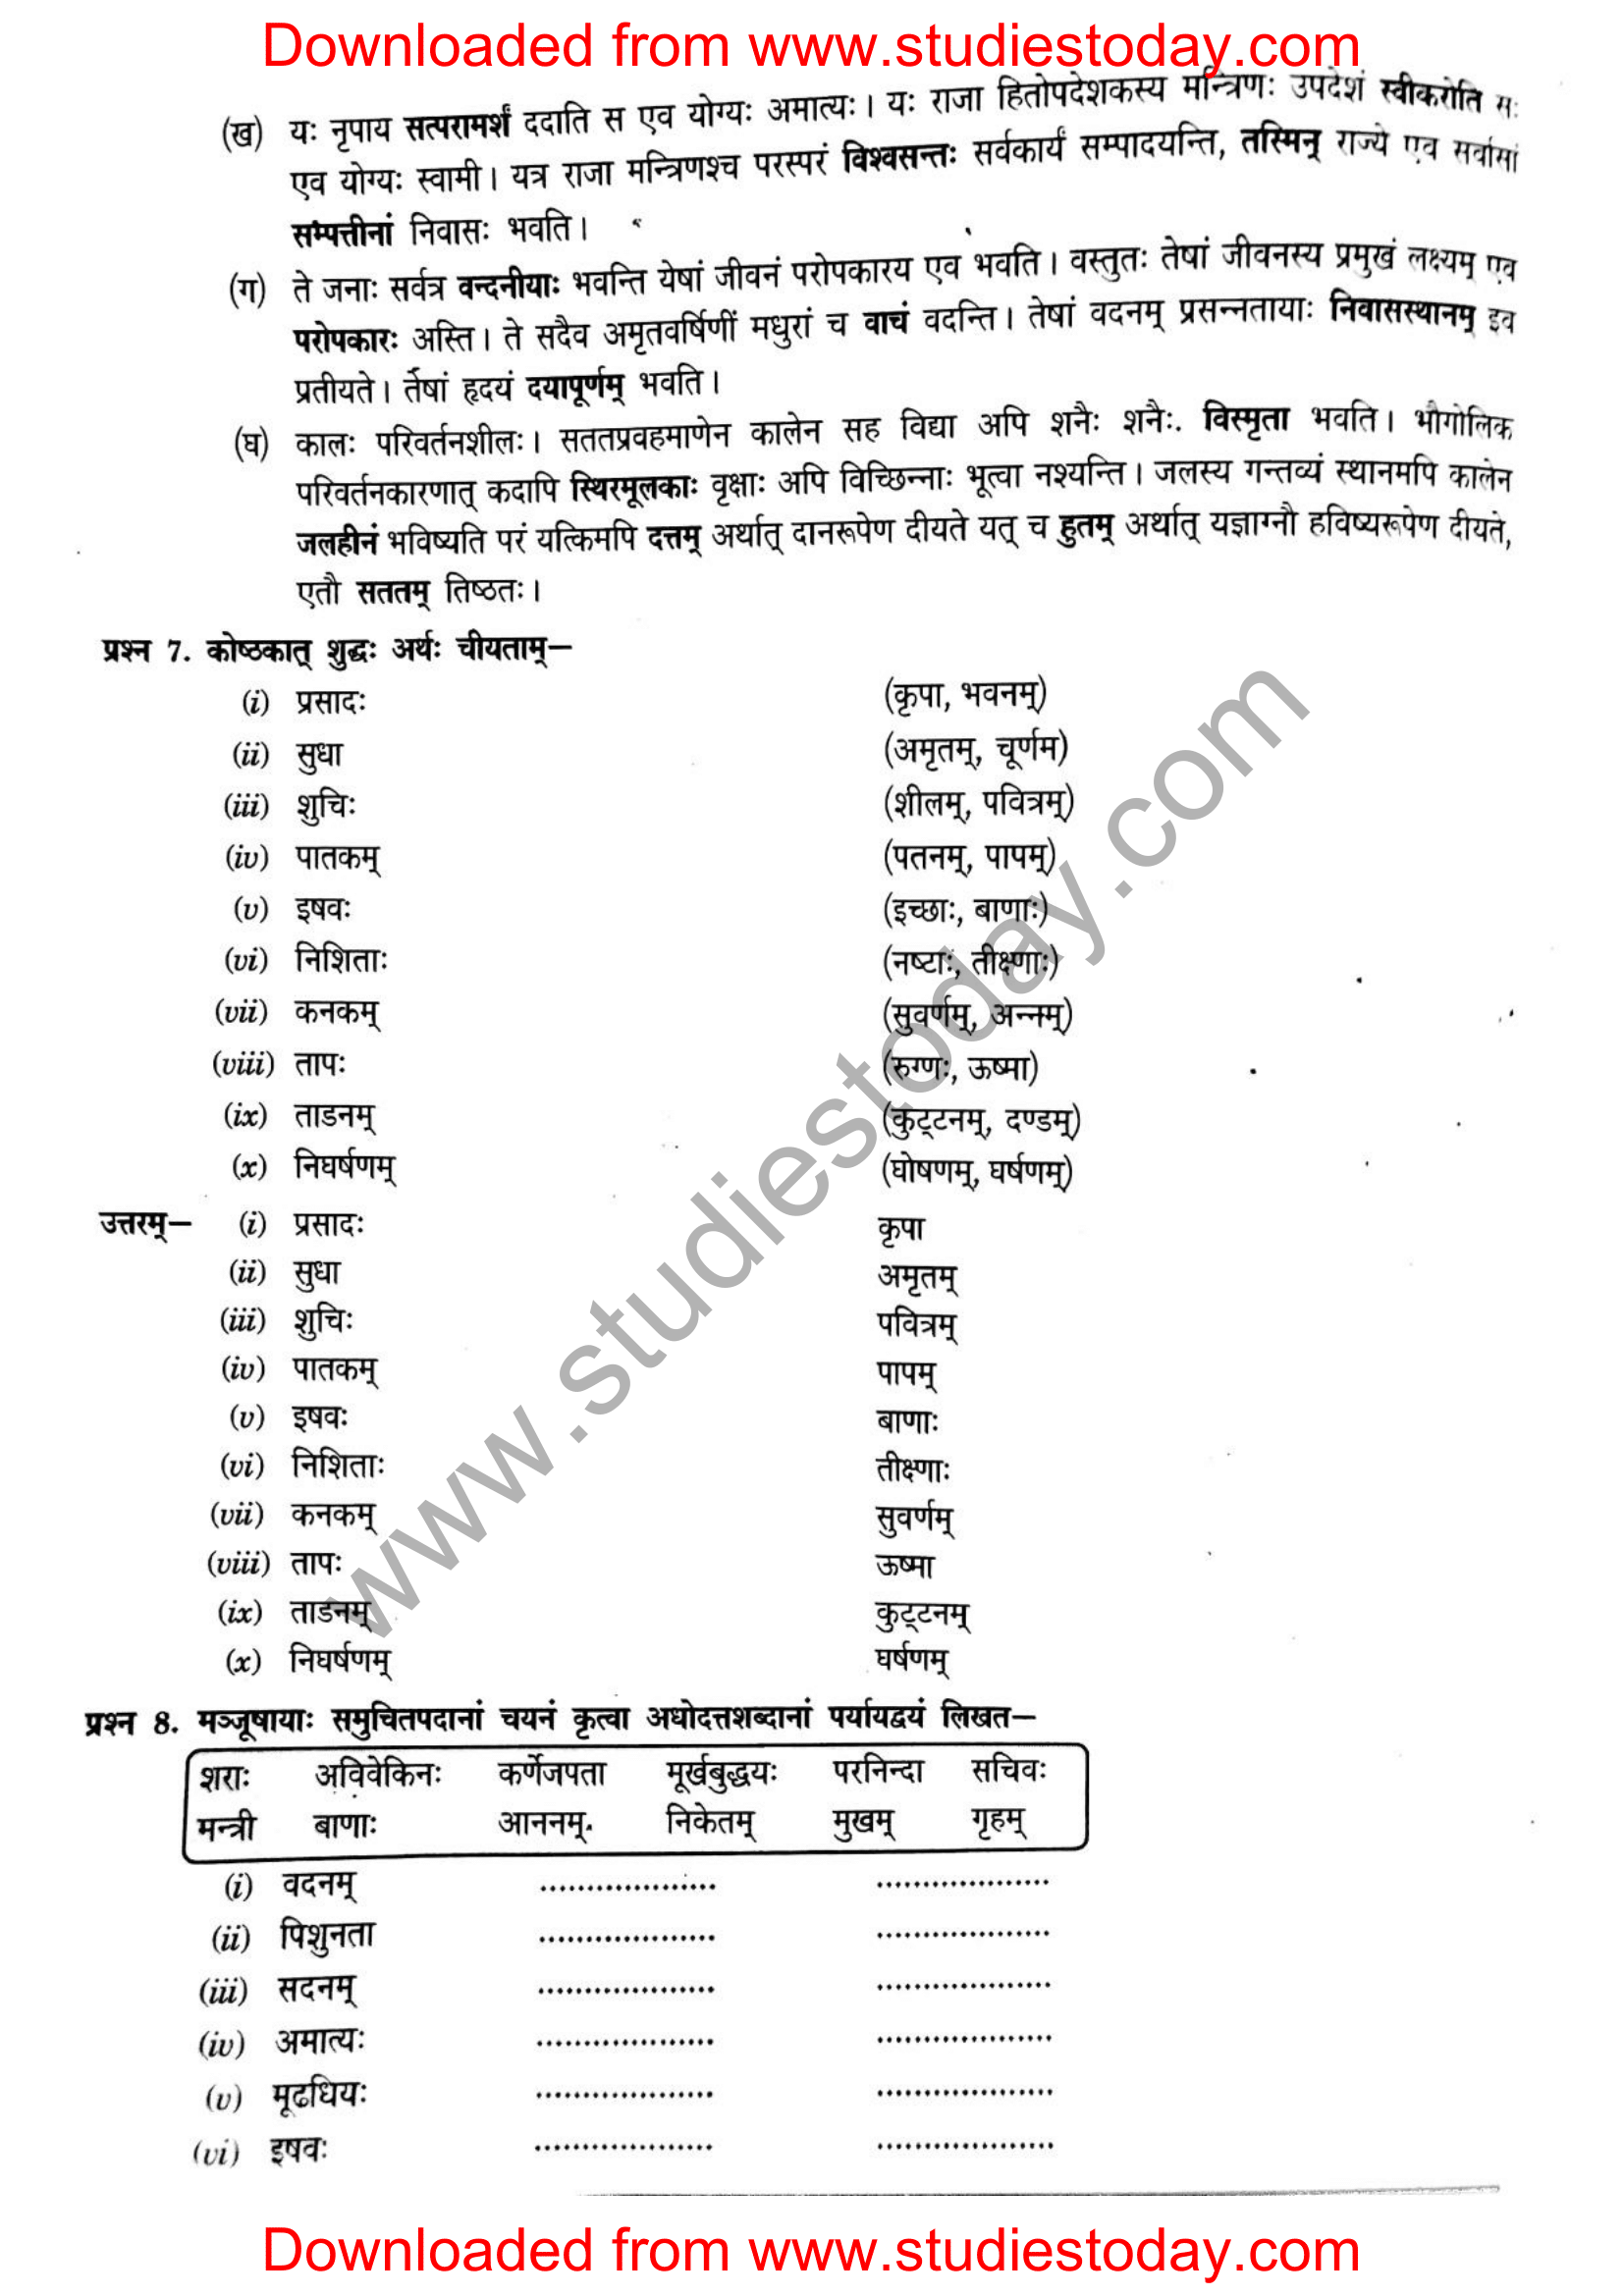 ncert-solutions-class-12-sanskrit-ritikia-chapter-6-09